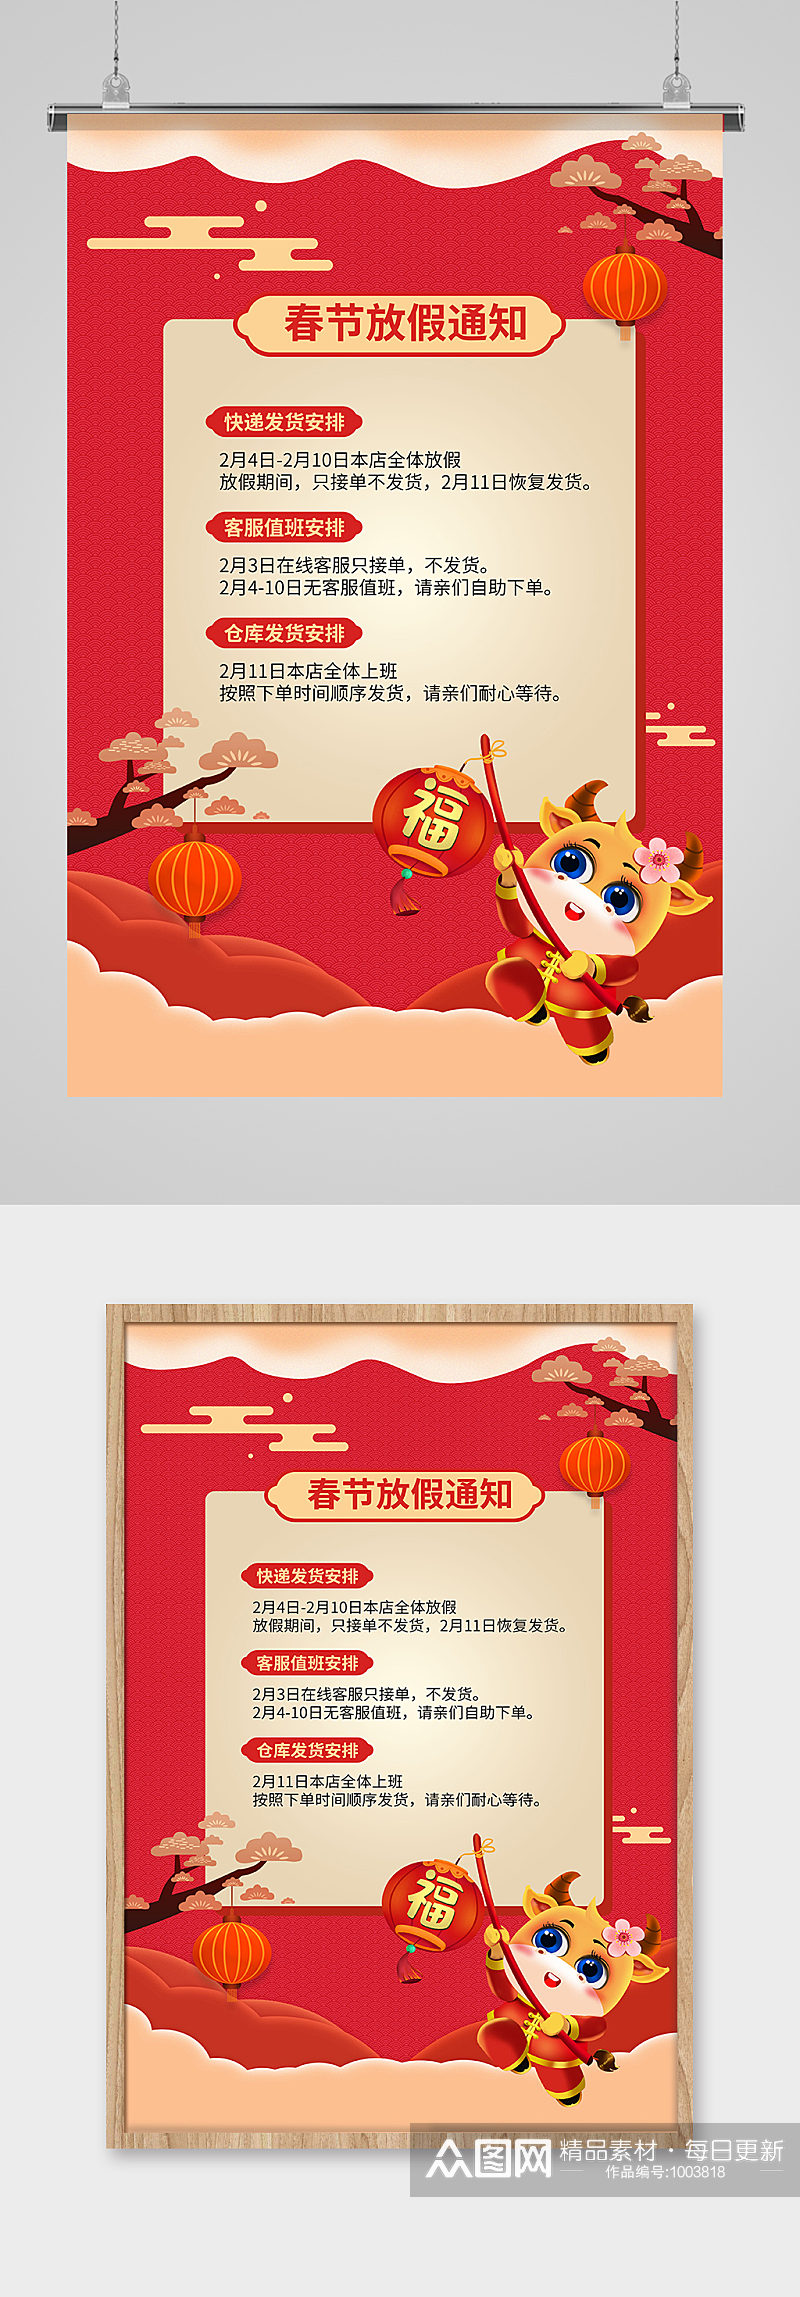 春节停业提灯笼的牛红色简约海报素材